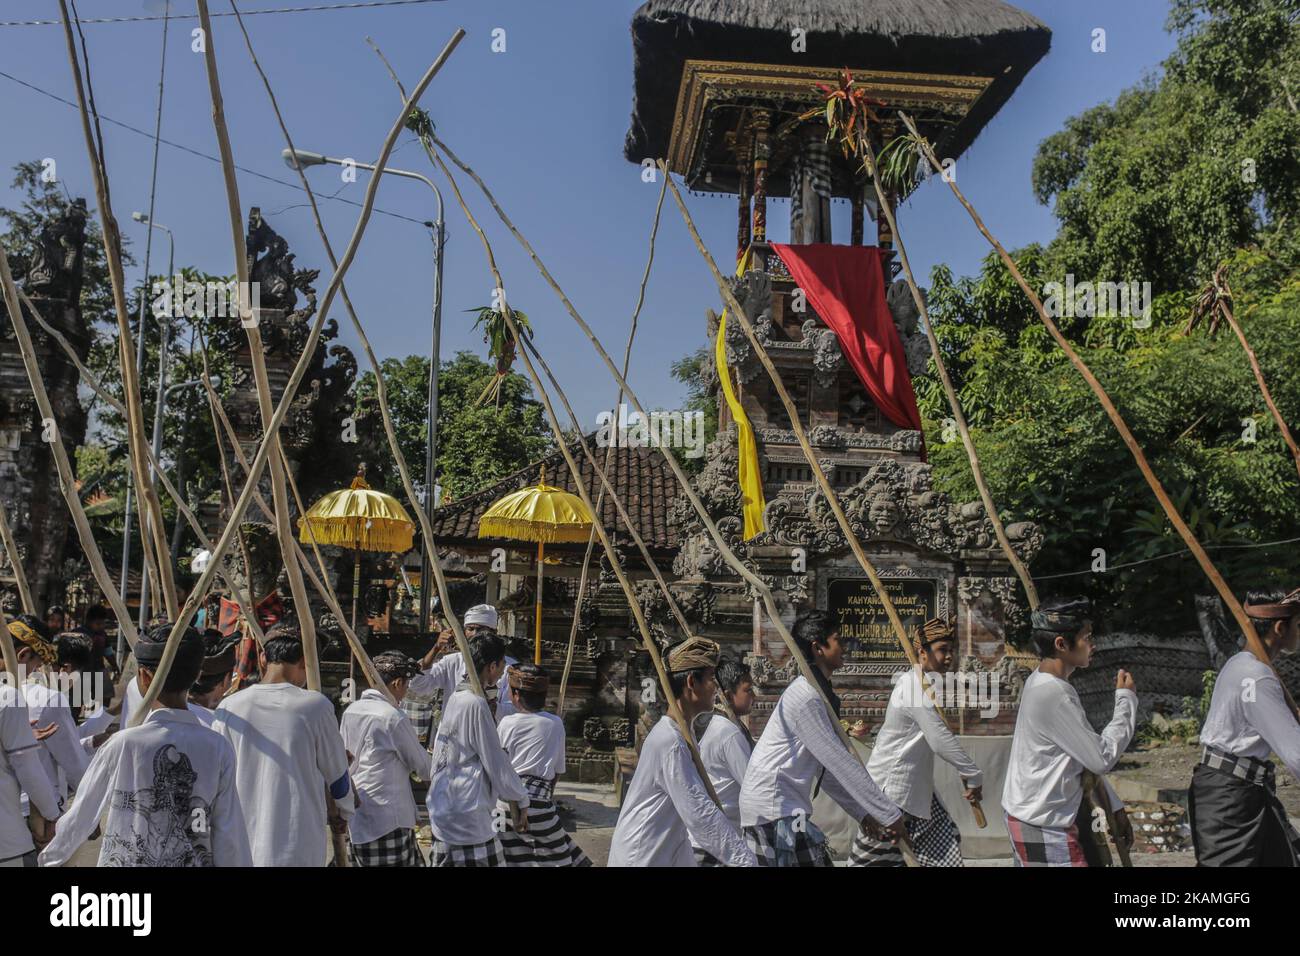 Junge Dorfbewohner gehen mit Holzstäben während des Mekotek-Rituals, das von balinesischen Hindus am 15. April 2017 im Dorf Munggu in Badung, Bali, Indonesien, praktiziert wurde. Das Mekotek-Ritual ist eine traditionelle Zeremonie im Dorf Munggu, bei der der symbolische Sieg des Guten (Dharma) gegen das Böse (Adharma) gefeiert wird, bei dem die Teilnehmer wiederholt auf eine hölzerne Pyramide aus Stäben klettern, wie sie von Zelebranten von einem Tempel zum anderen getragen wird. (Foto von Johanes Christo/NurPhoto) *** Bitte nutzen Sie die Gutschrift aus dem Kreditfeld *** Stockfoto